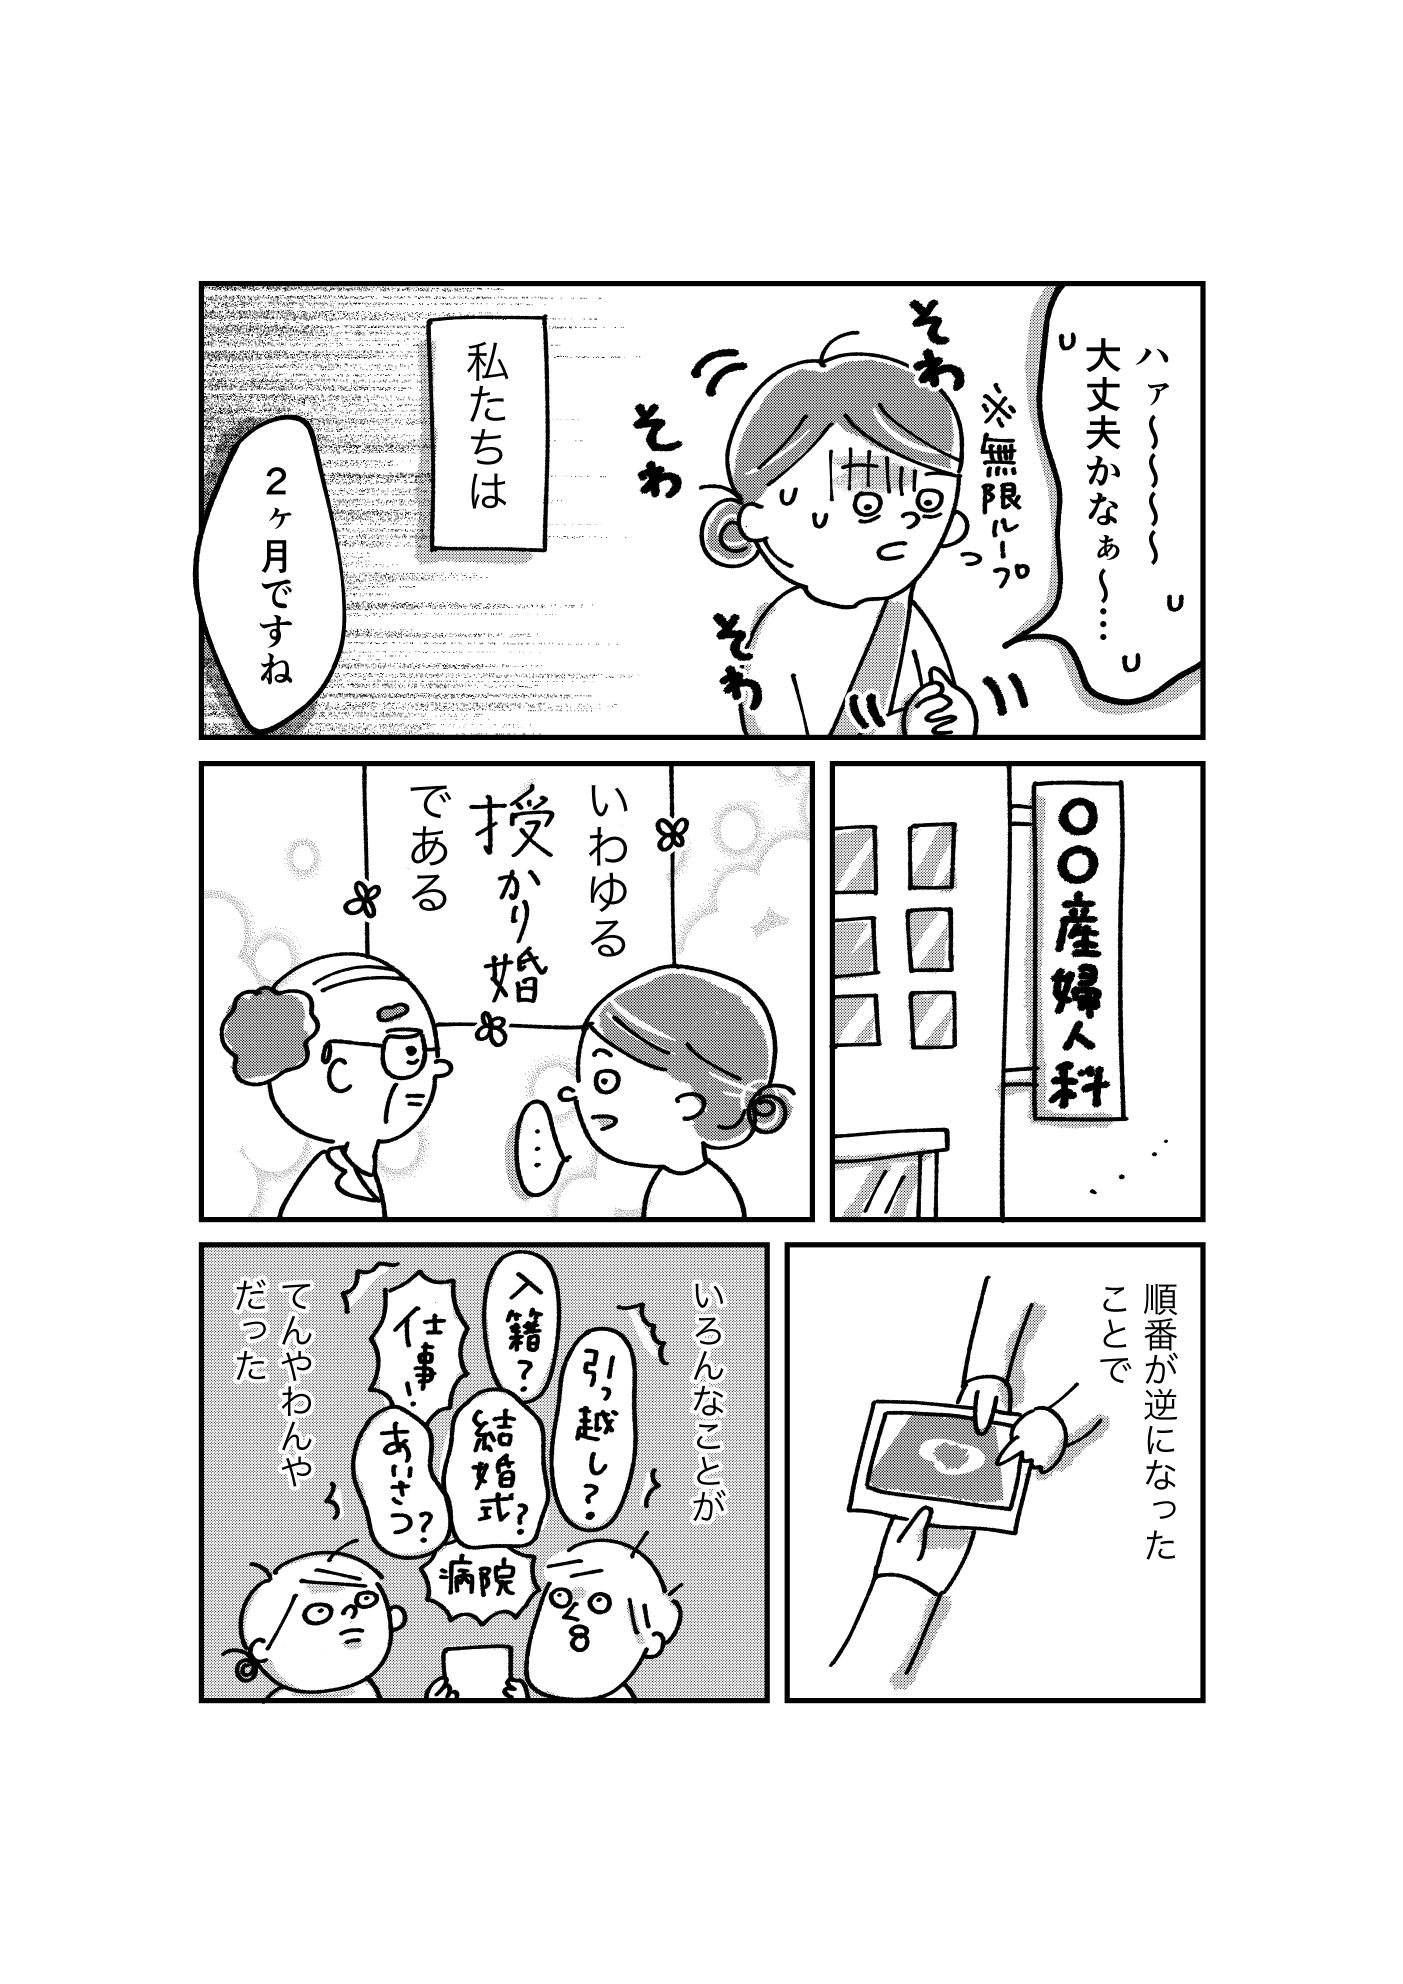 コミック_出力_003